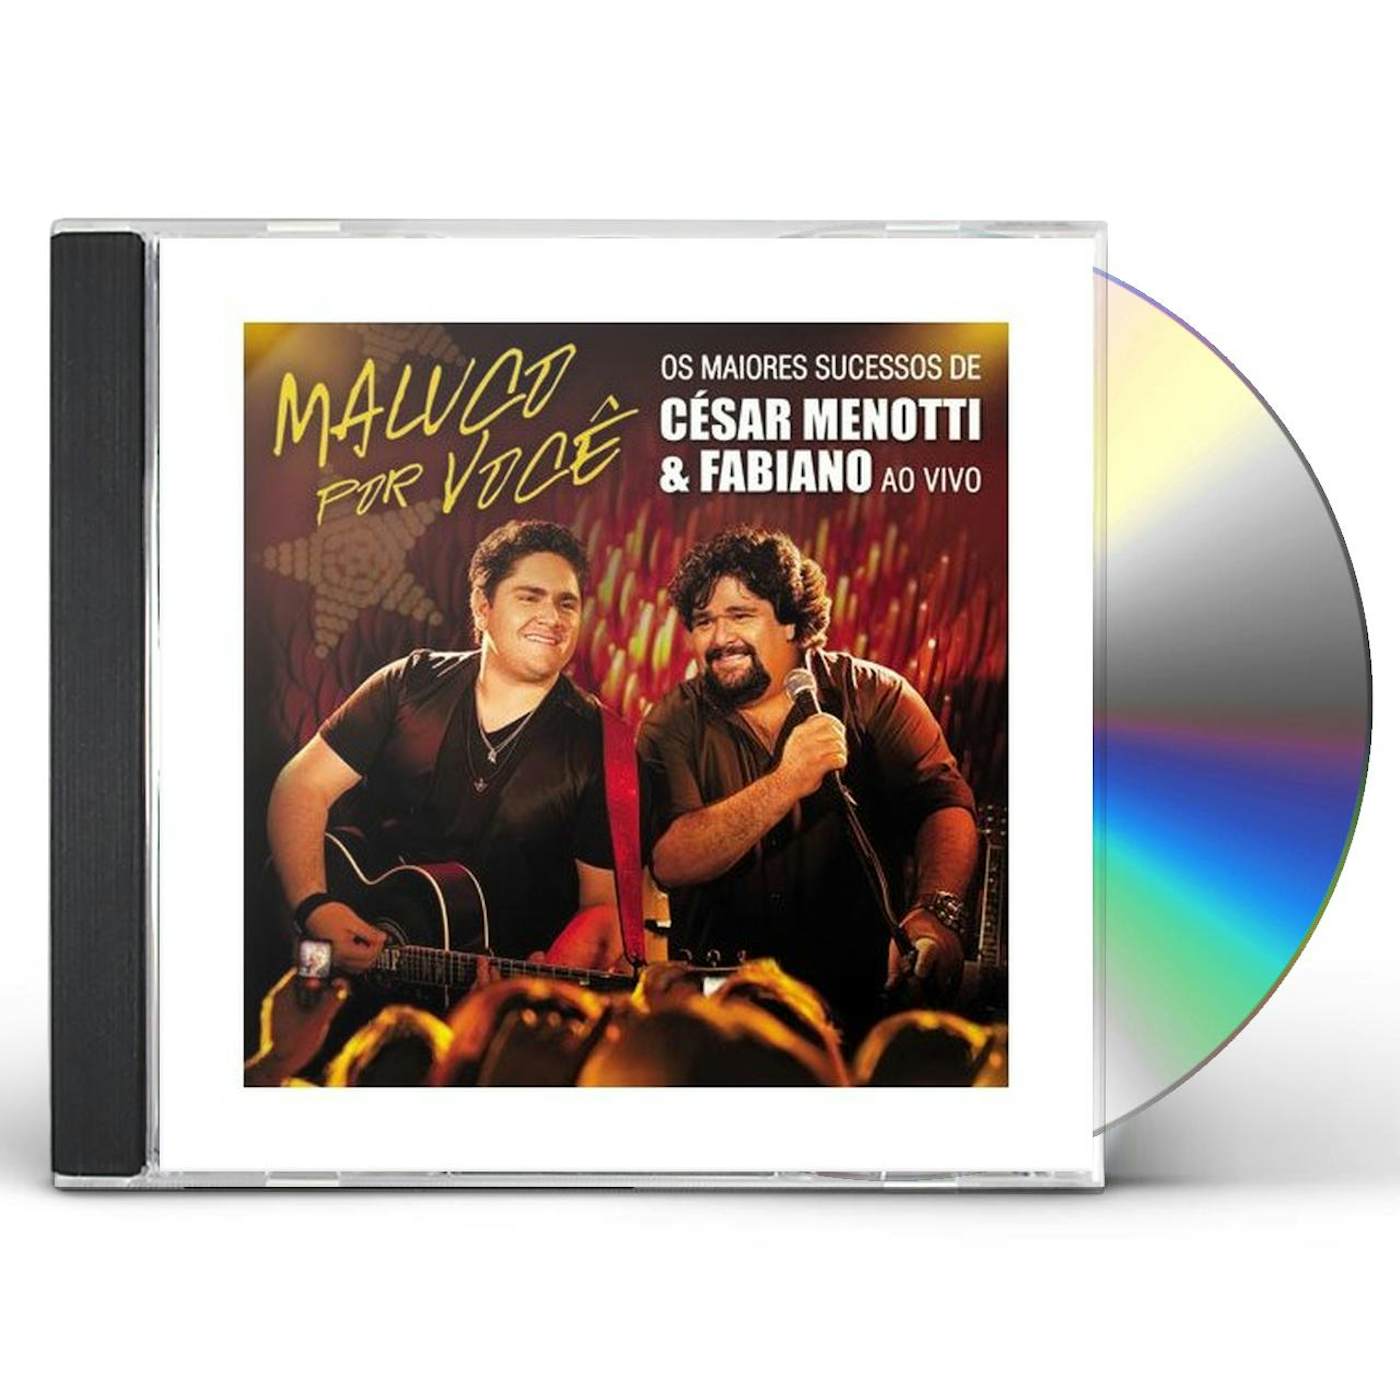 César Menotti & Fabiano MALUCO POR VOCE: OS MAIORES SUCESSOS AO VIVO CD